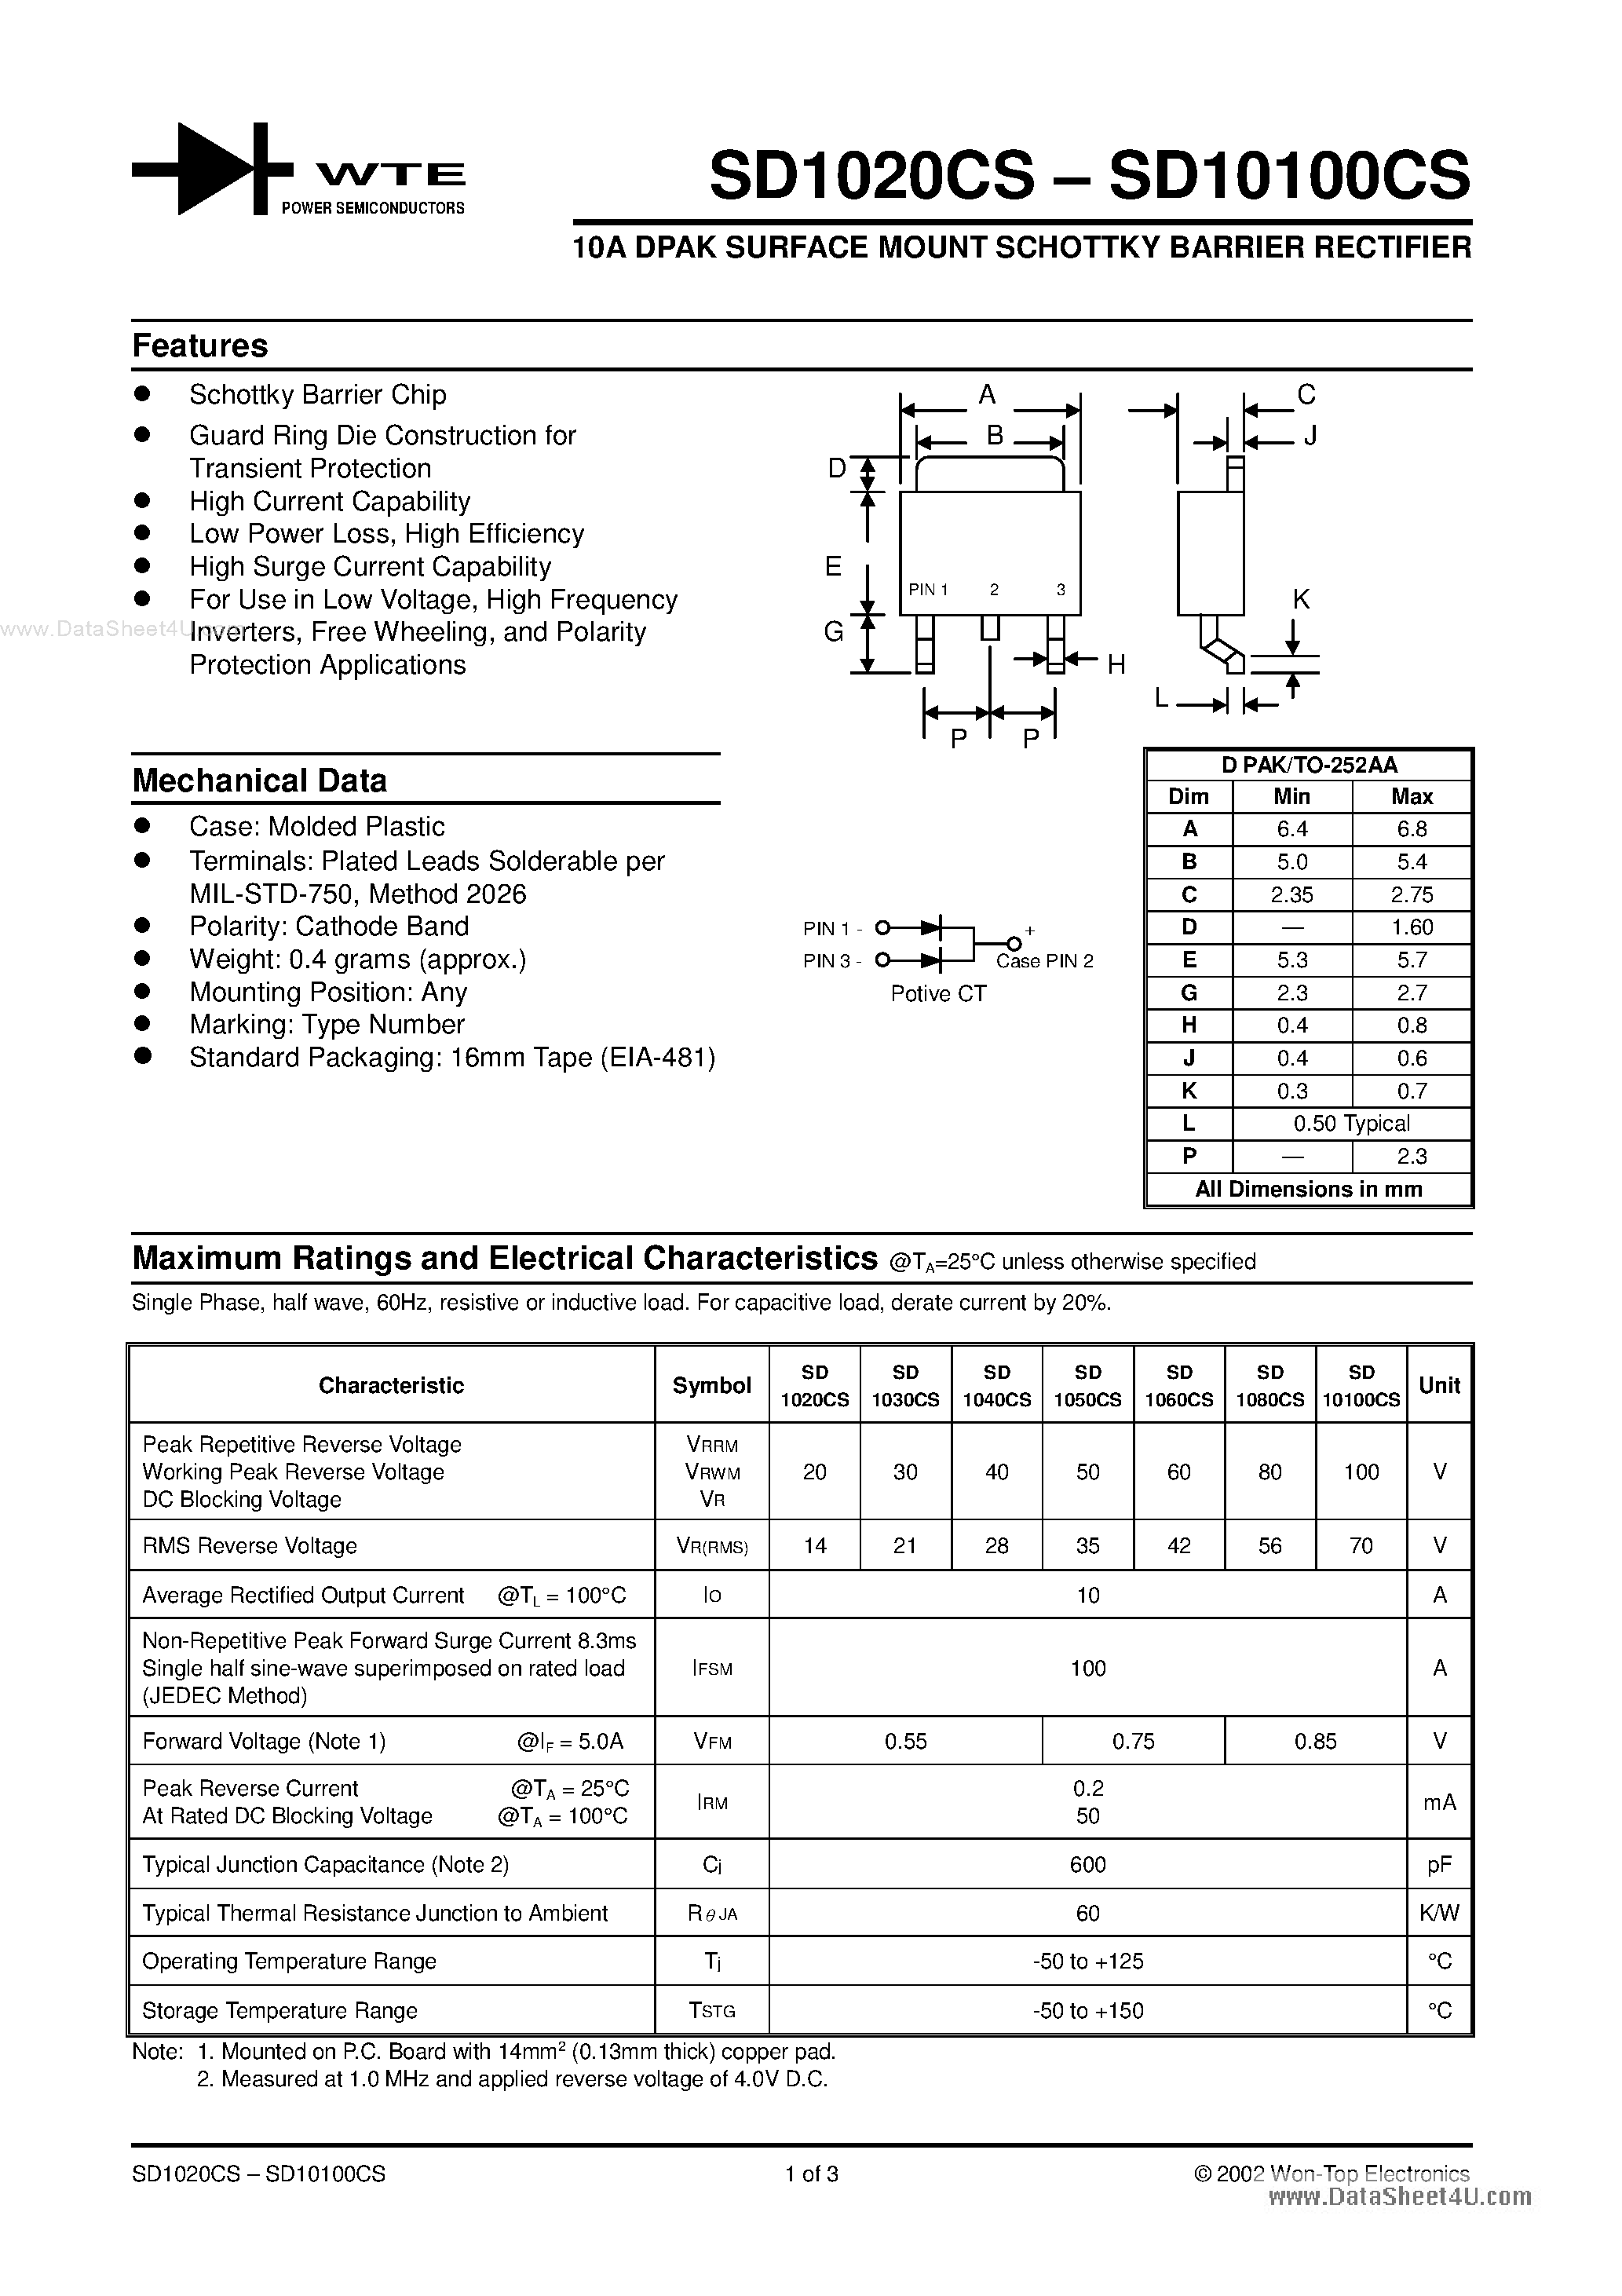 Даташит SD1008CS - (SD1020CS - SD10100CS) 10a Dpak Surface Mount Schottky Barrier Rectifier страница 1